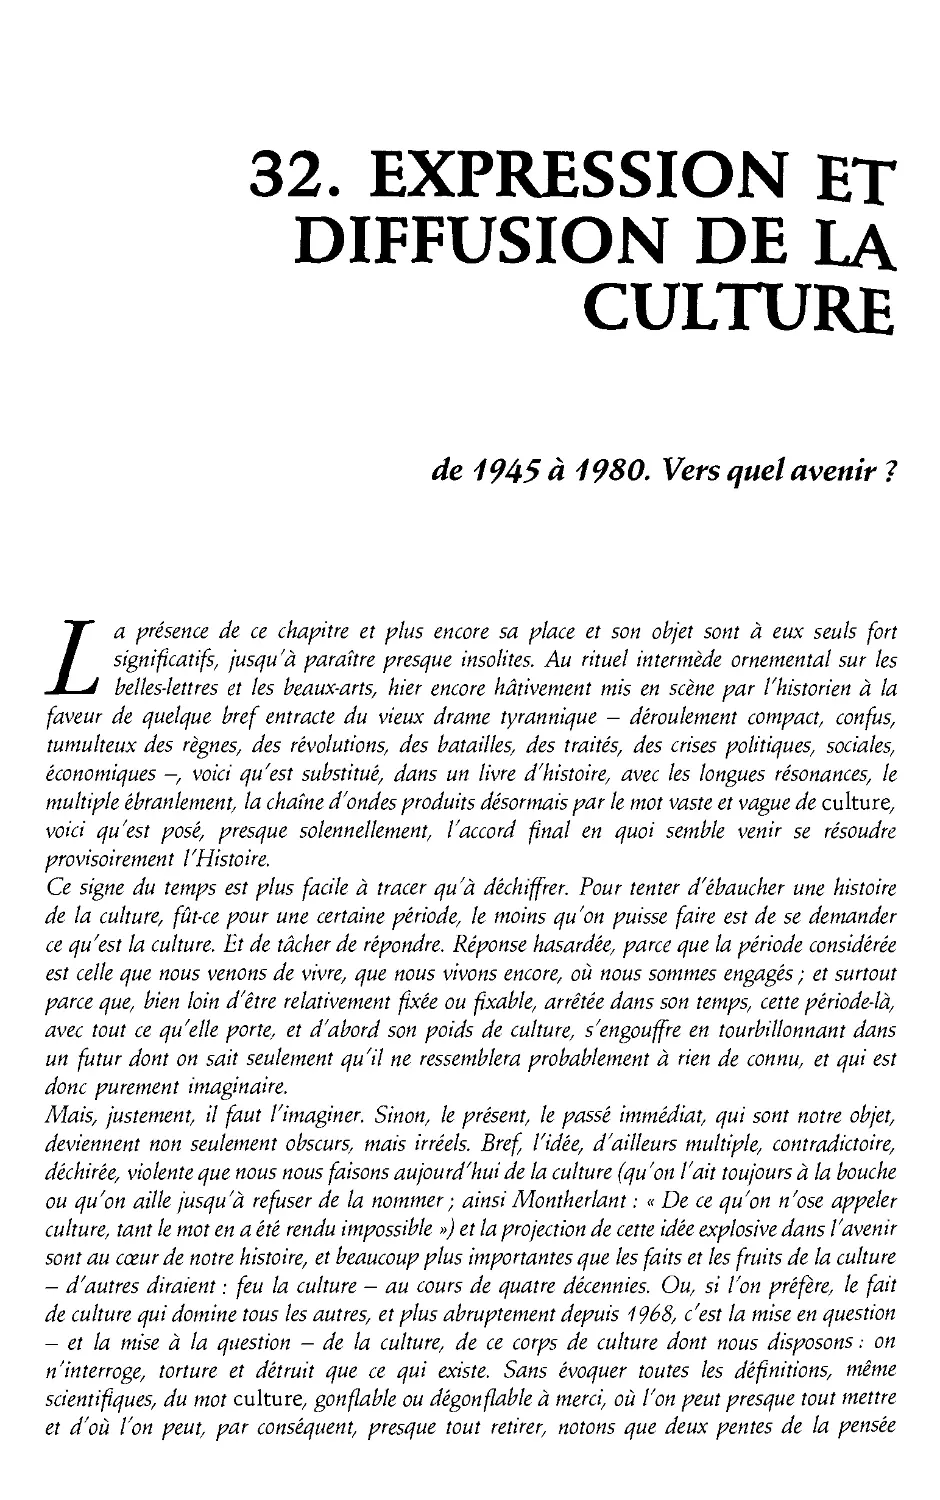 32. Expression et diffusion de la culture de 1945 a 1980 [993]